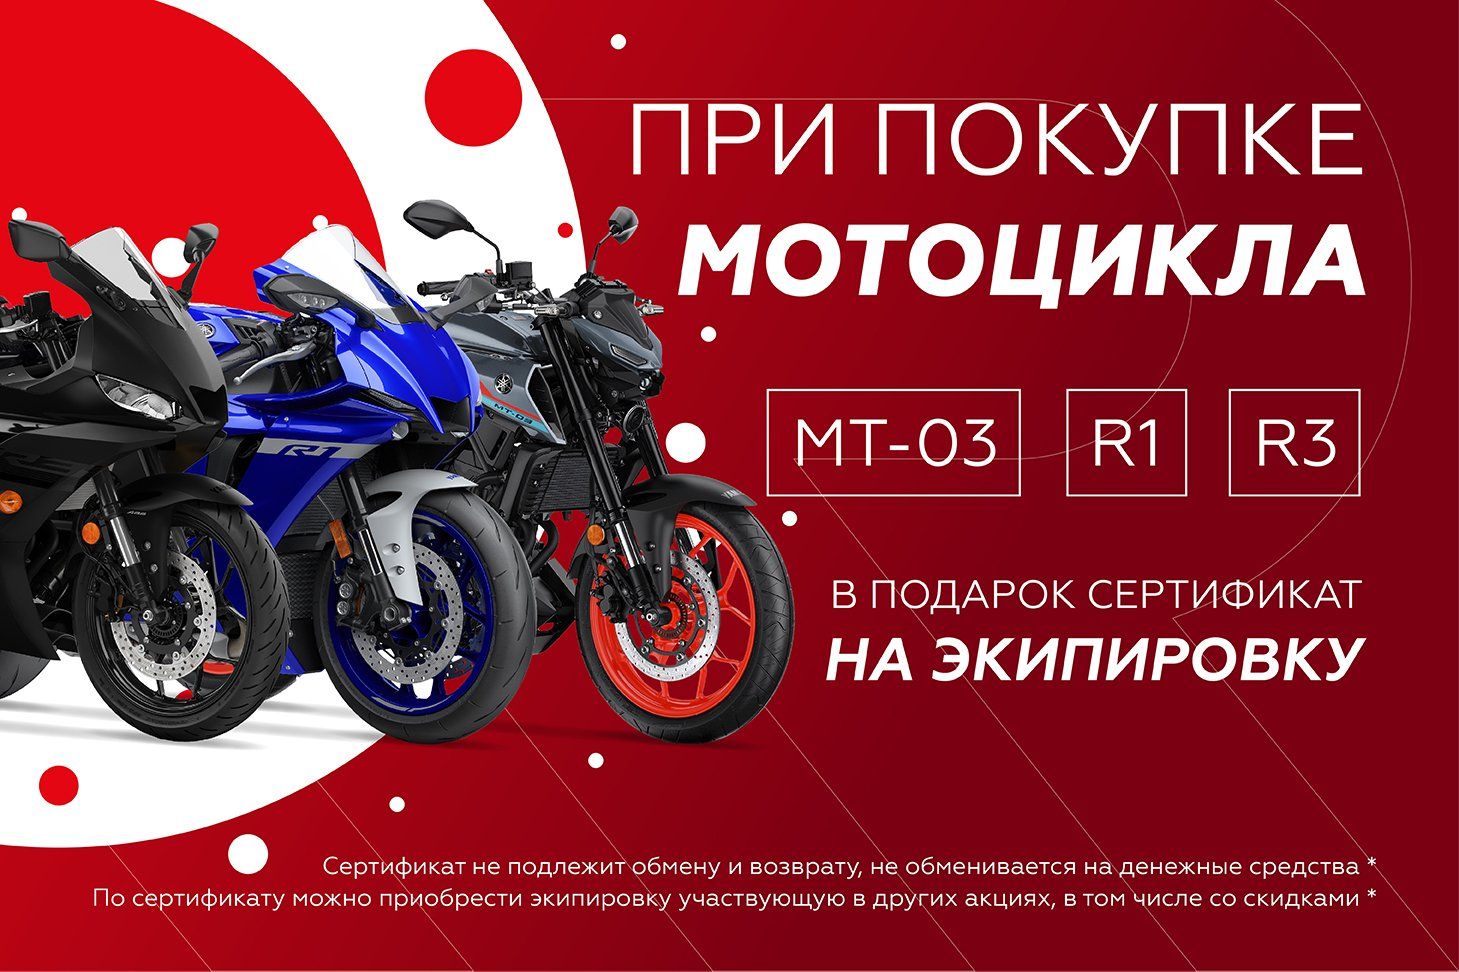 При покупке мотоцикла Yamaha MT-03, R3 или R1 в подарок сертификат на экипировку!